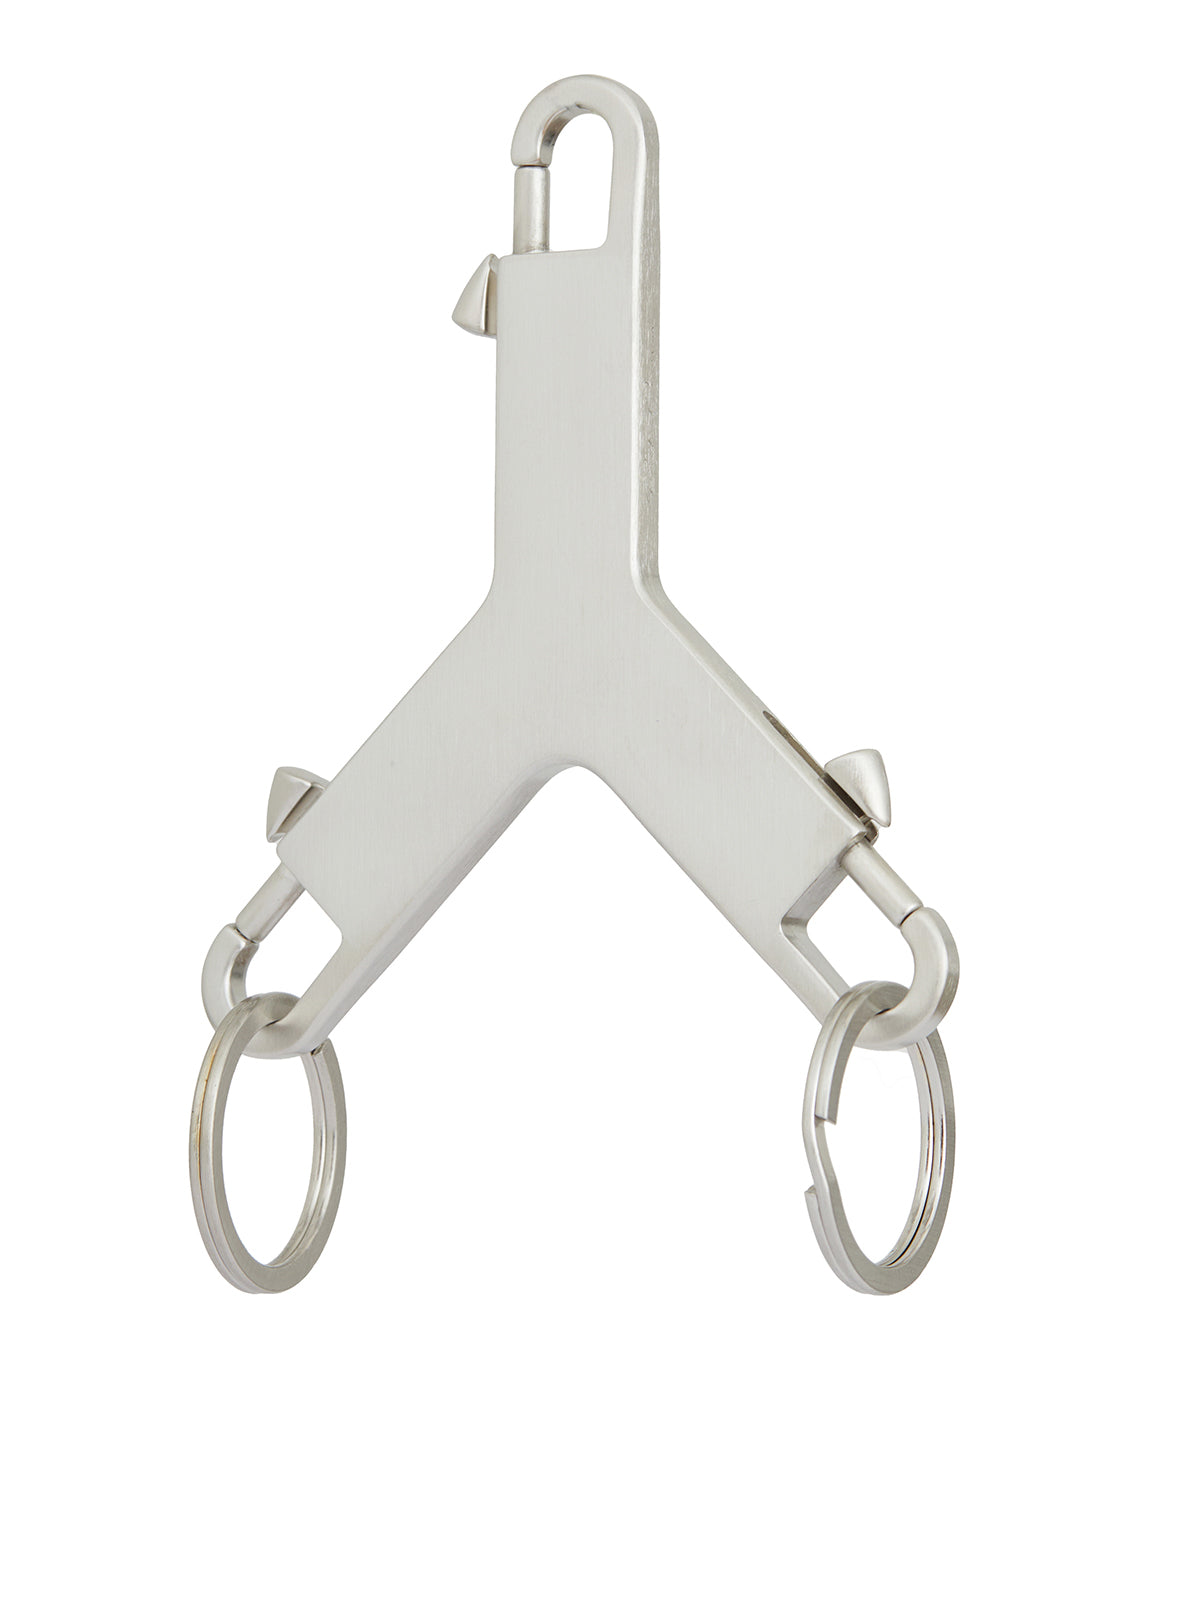 精致的银色钥匙链-3面扣环, 雕刻标志